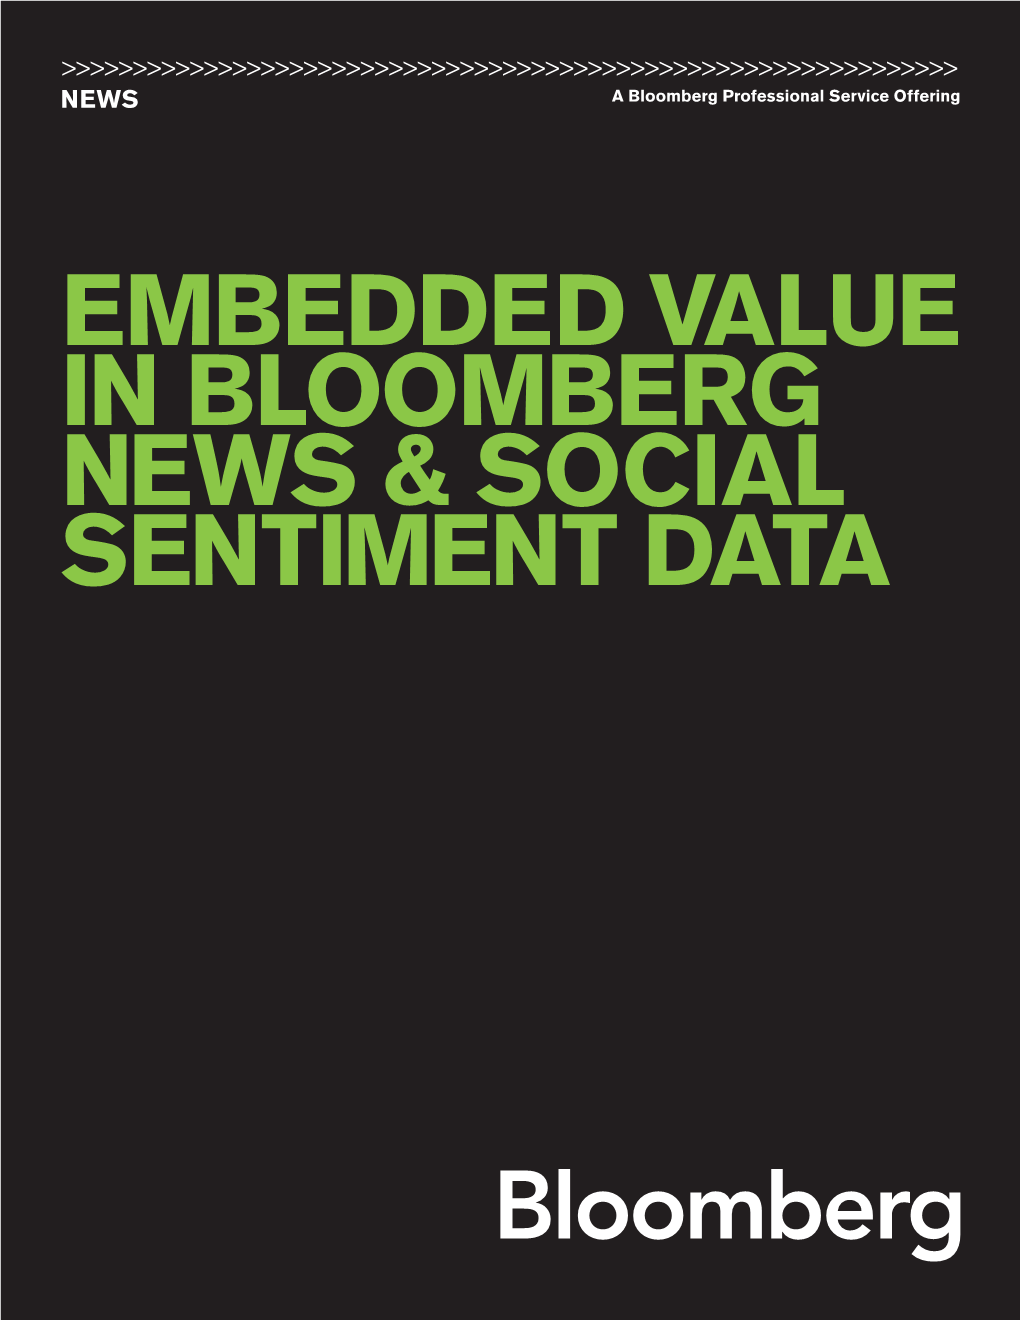 Embedded Value in Bloomberg News & Social Sentiment Data